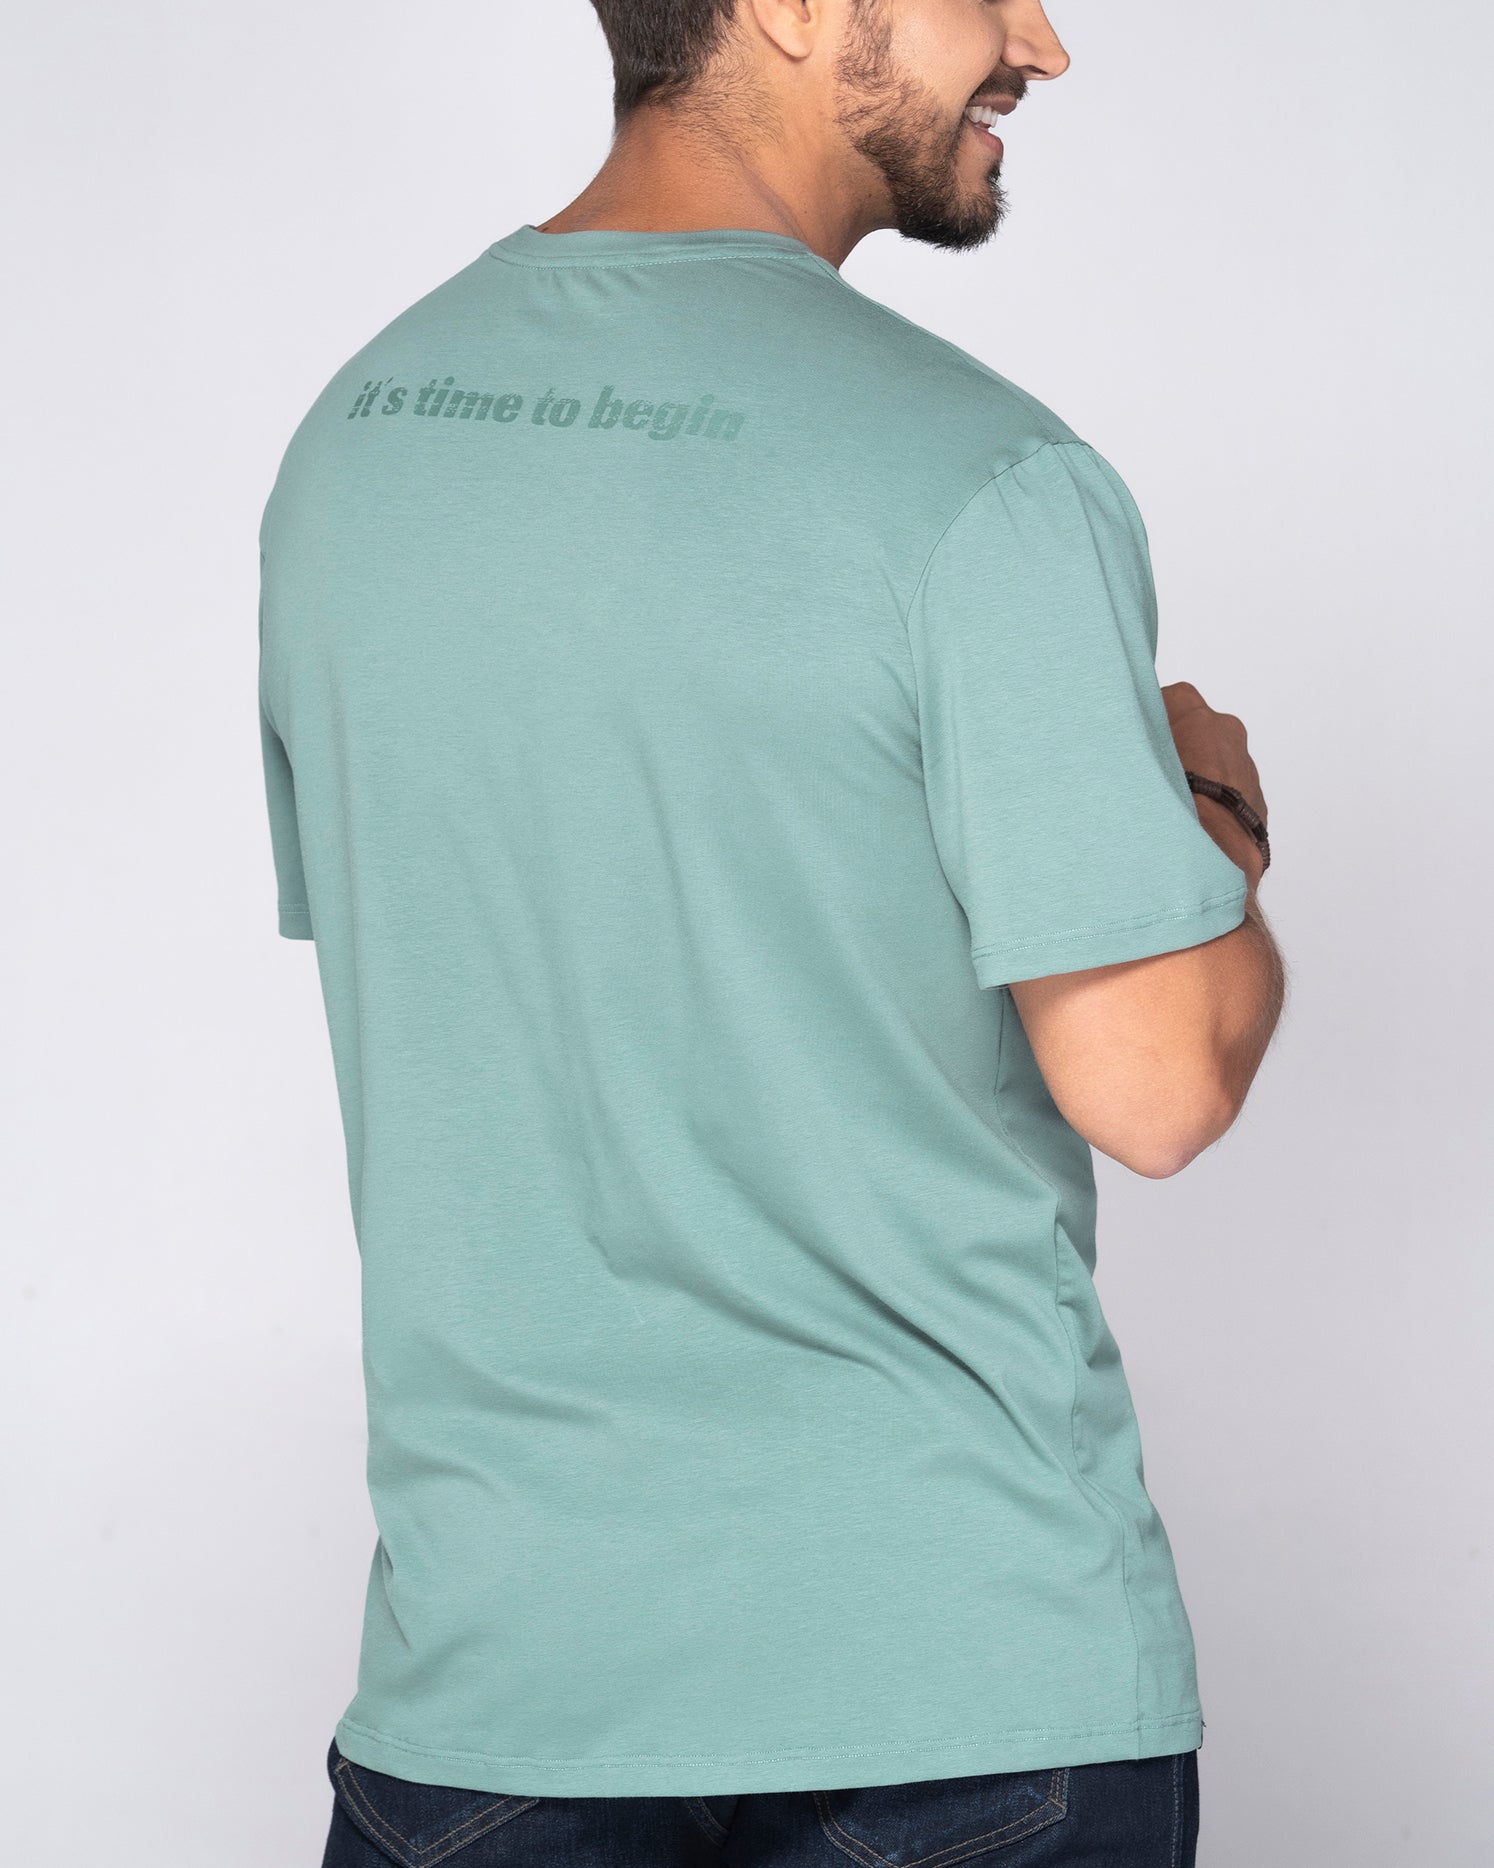 Camiseta Regular Color Verde Menta, Blanco Y Negro Marca Rappaz